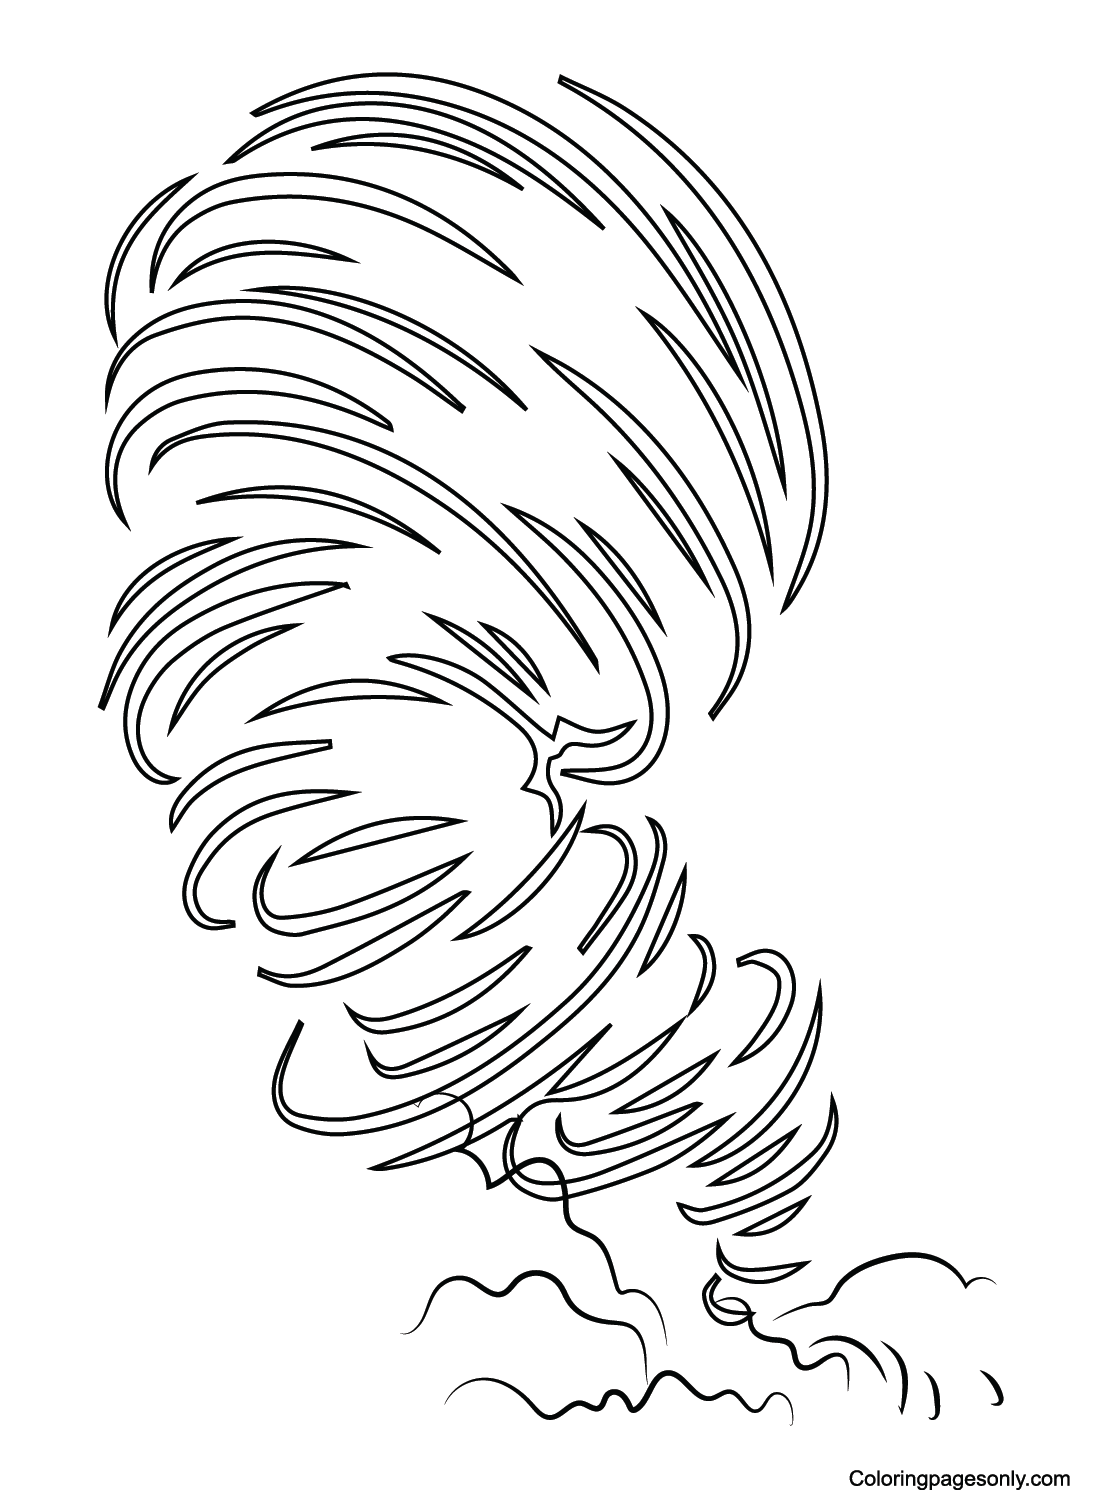 Tornado Dibujo de Tornado